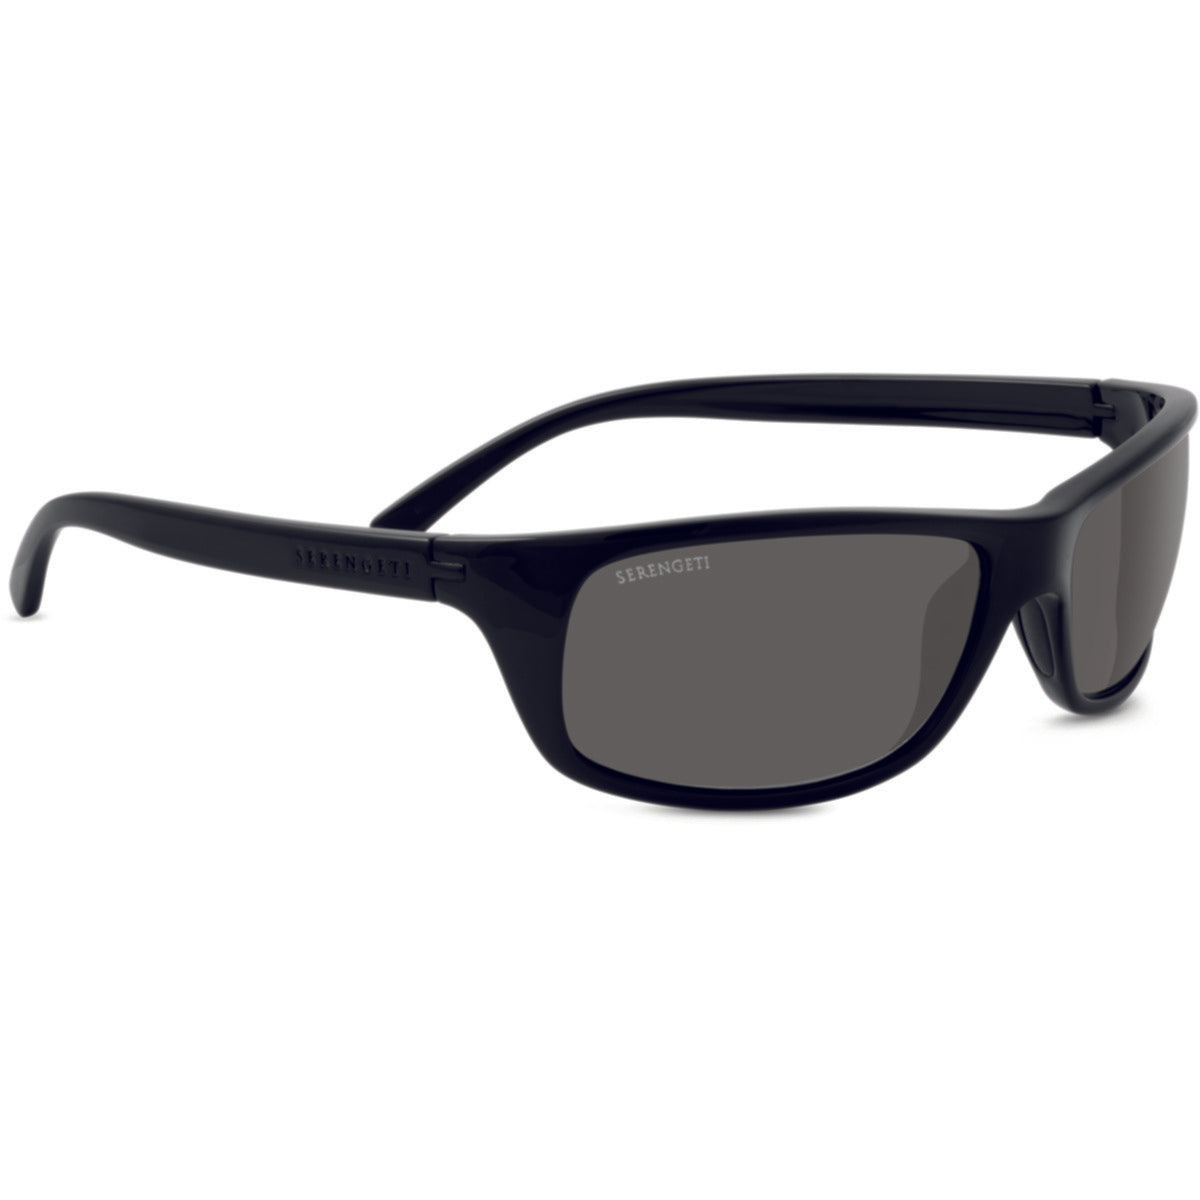 Serengeti Bormio Sunglasses  Black Shiny Medium, Large